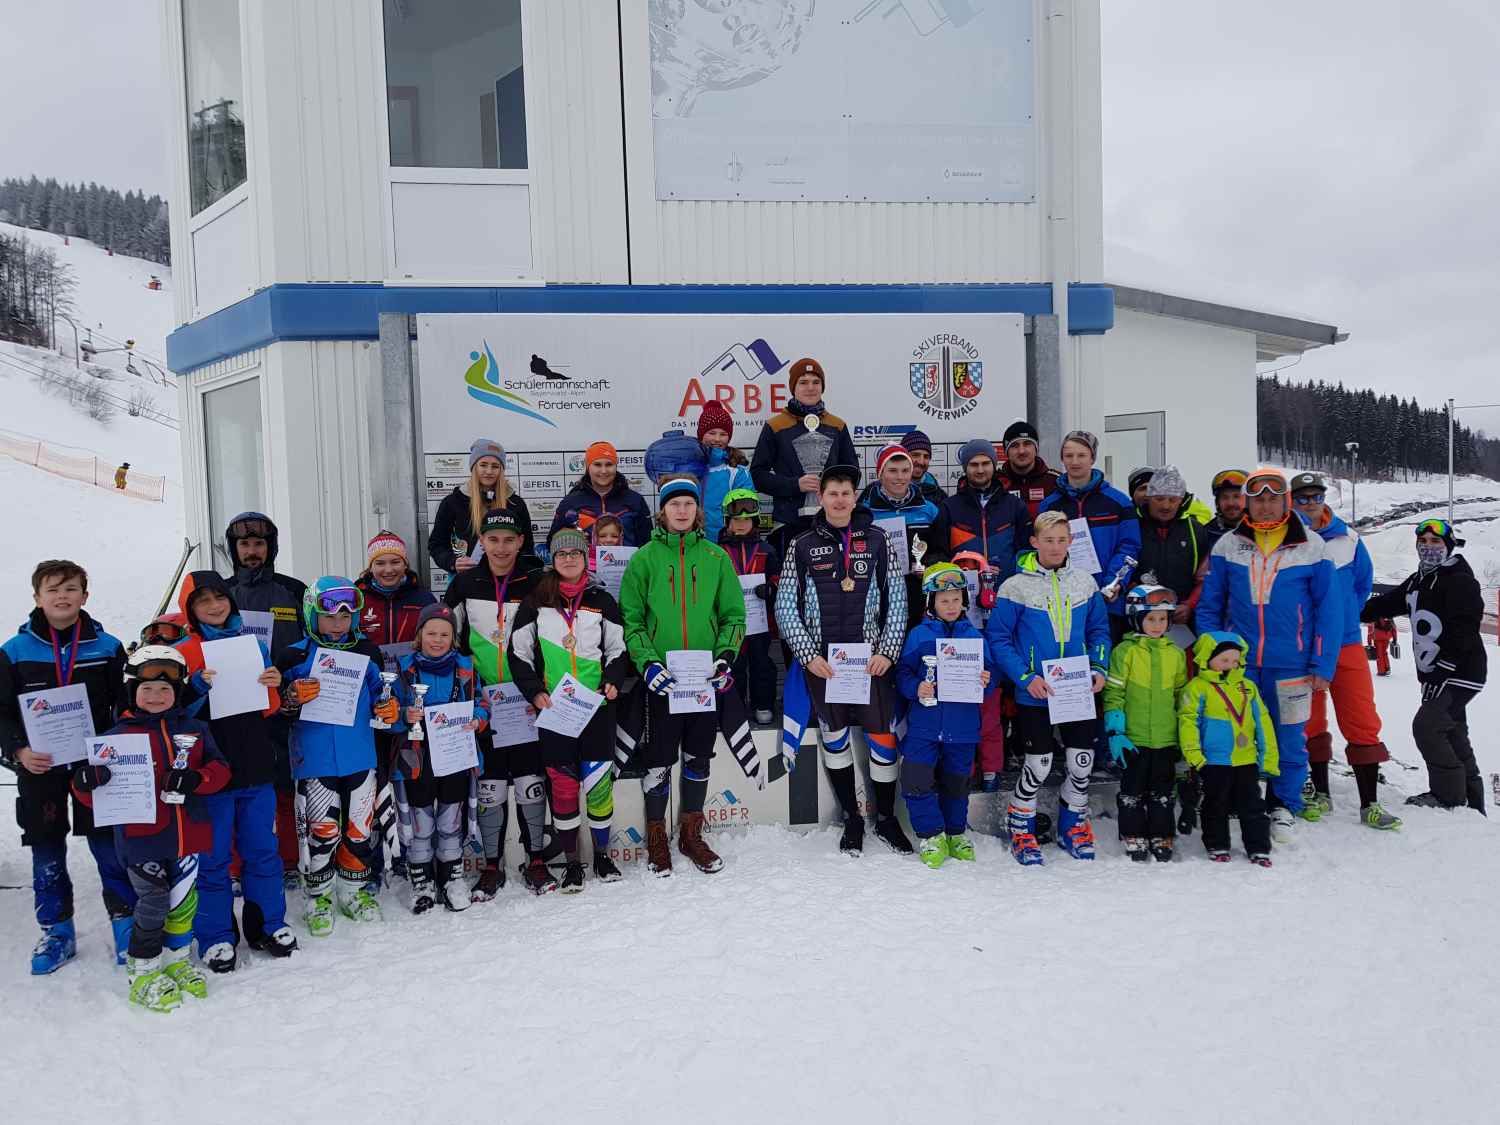 Fast jeder Teilnehmer der 21. offenen Slalomvereinsmeisterschaft des FC Chammünster bekam auch einen Pokal.